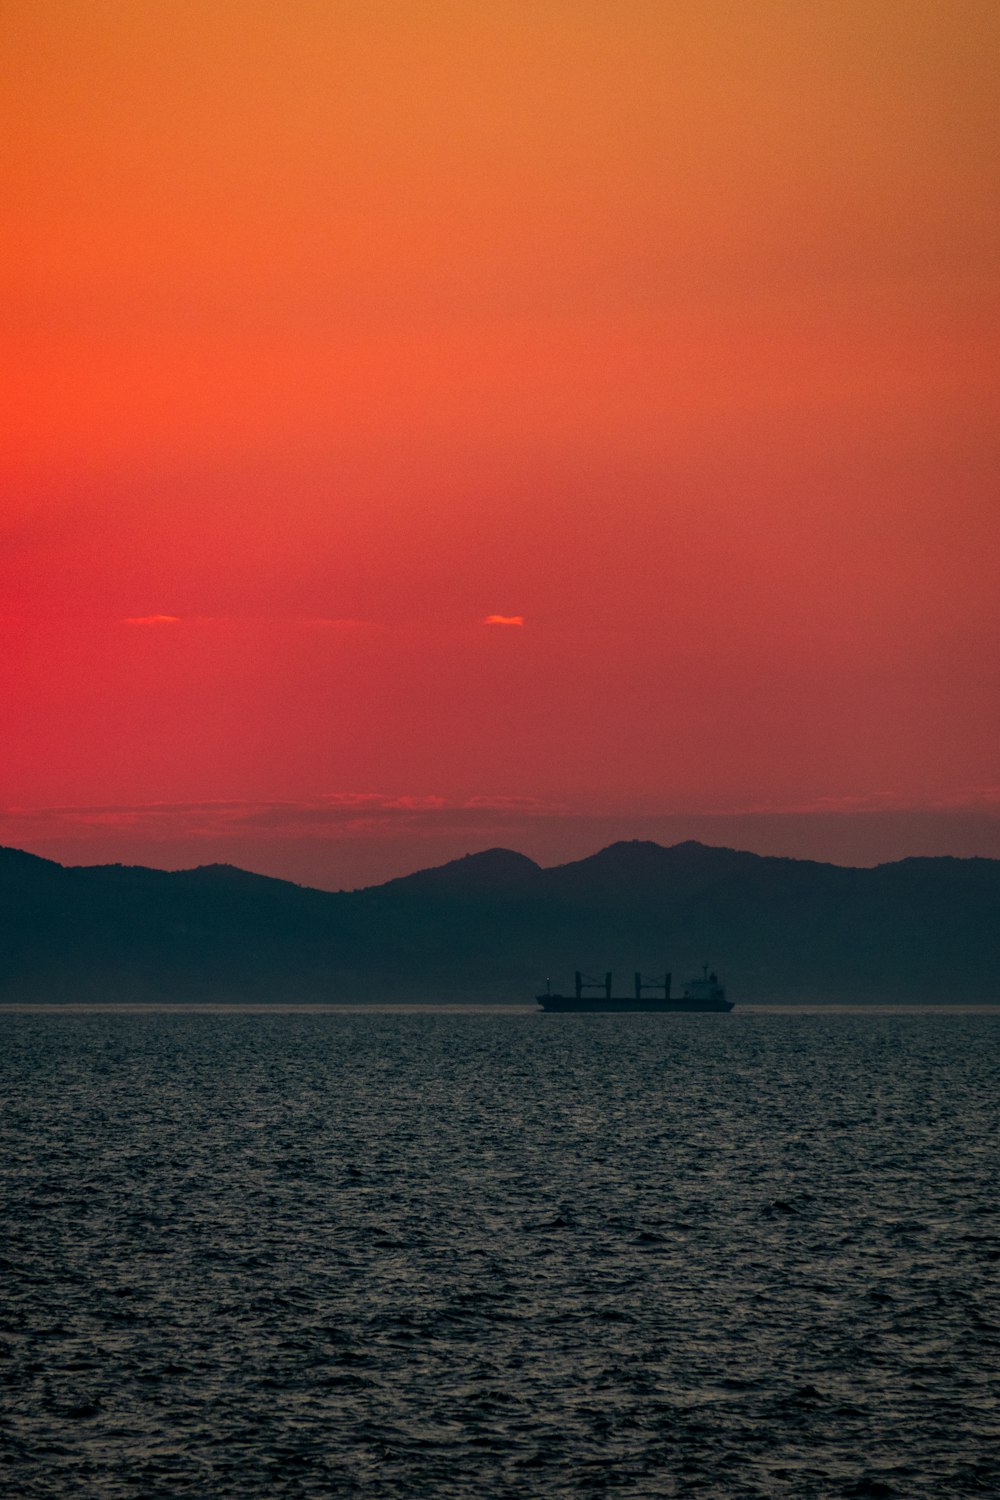 Fotografia Sillhoutte de navio no mar durante a Hora Dourada